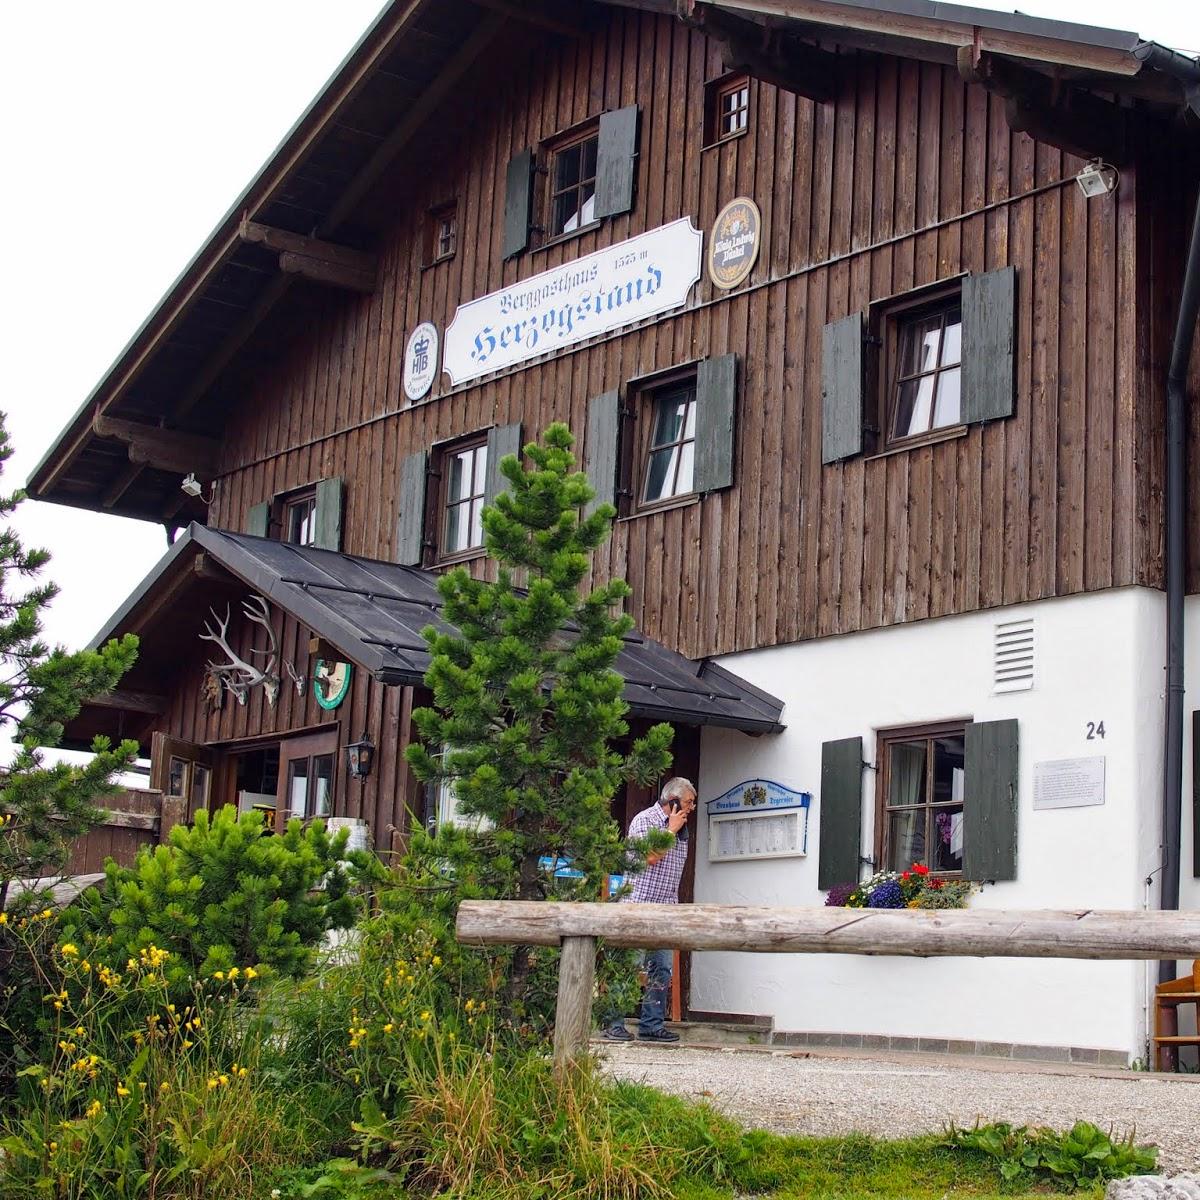 Restaurant "Siegfried Zauner GmbH" in Kochel am See